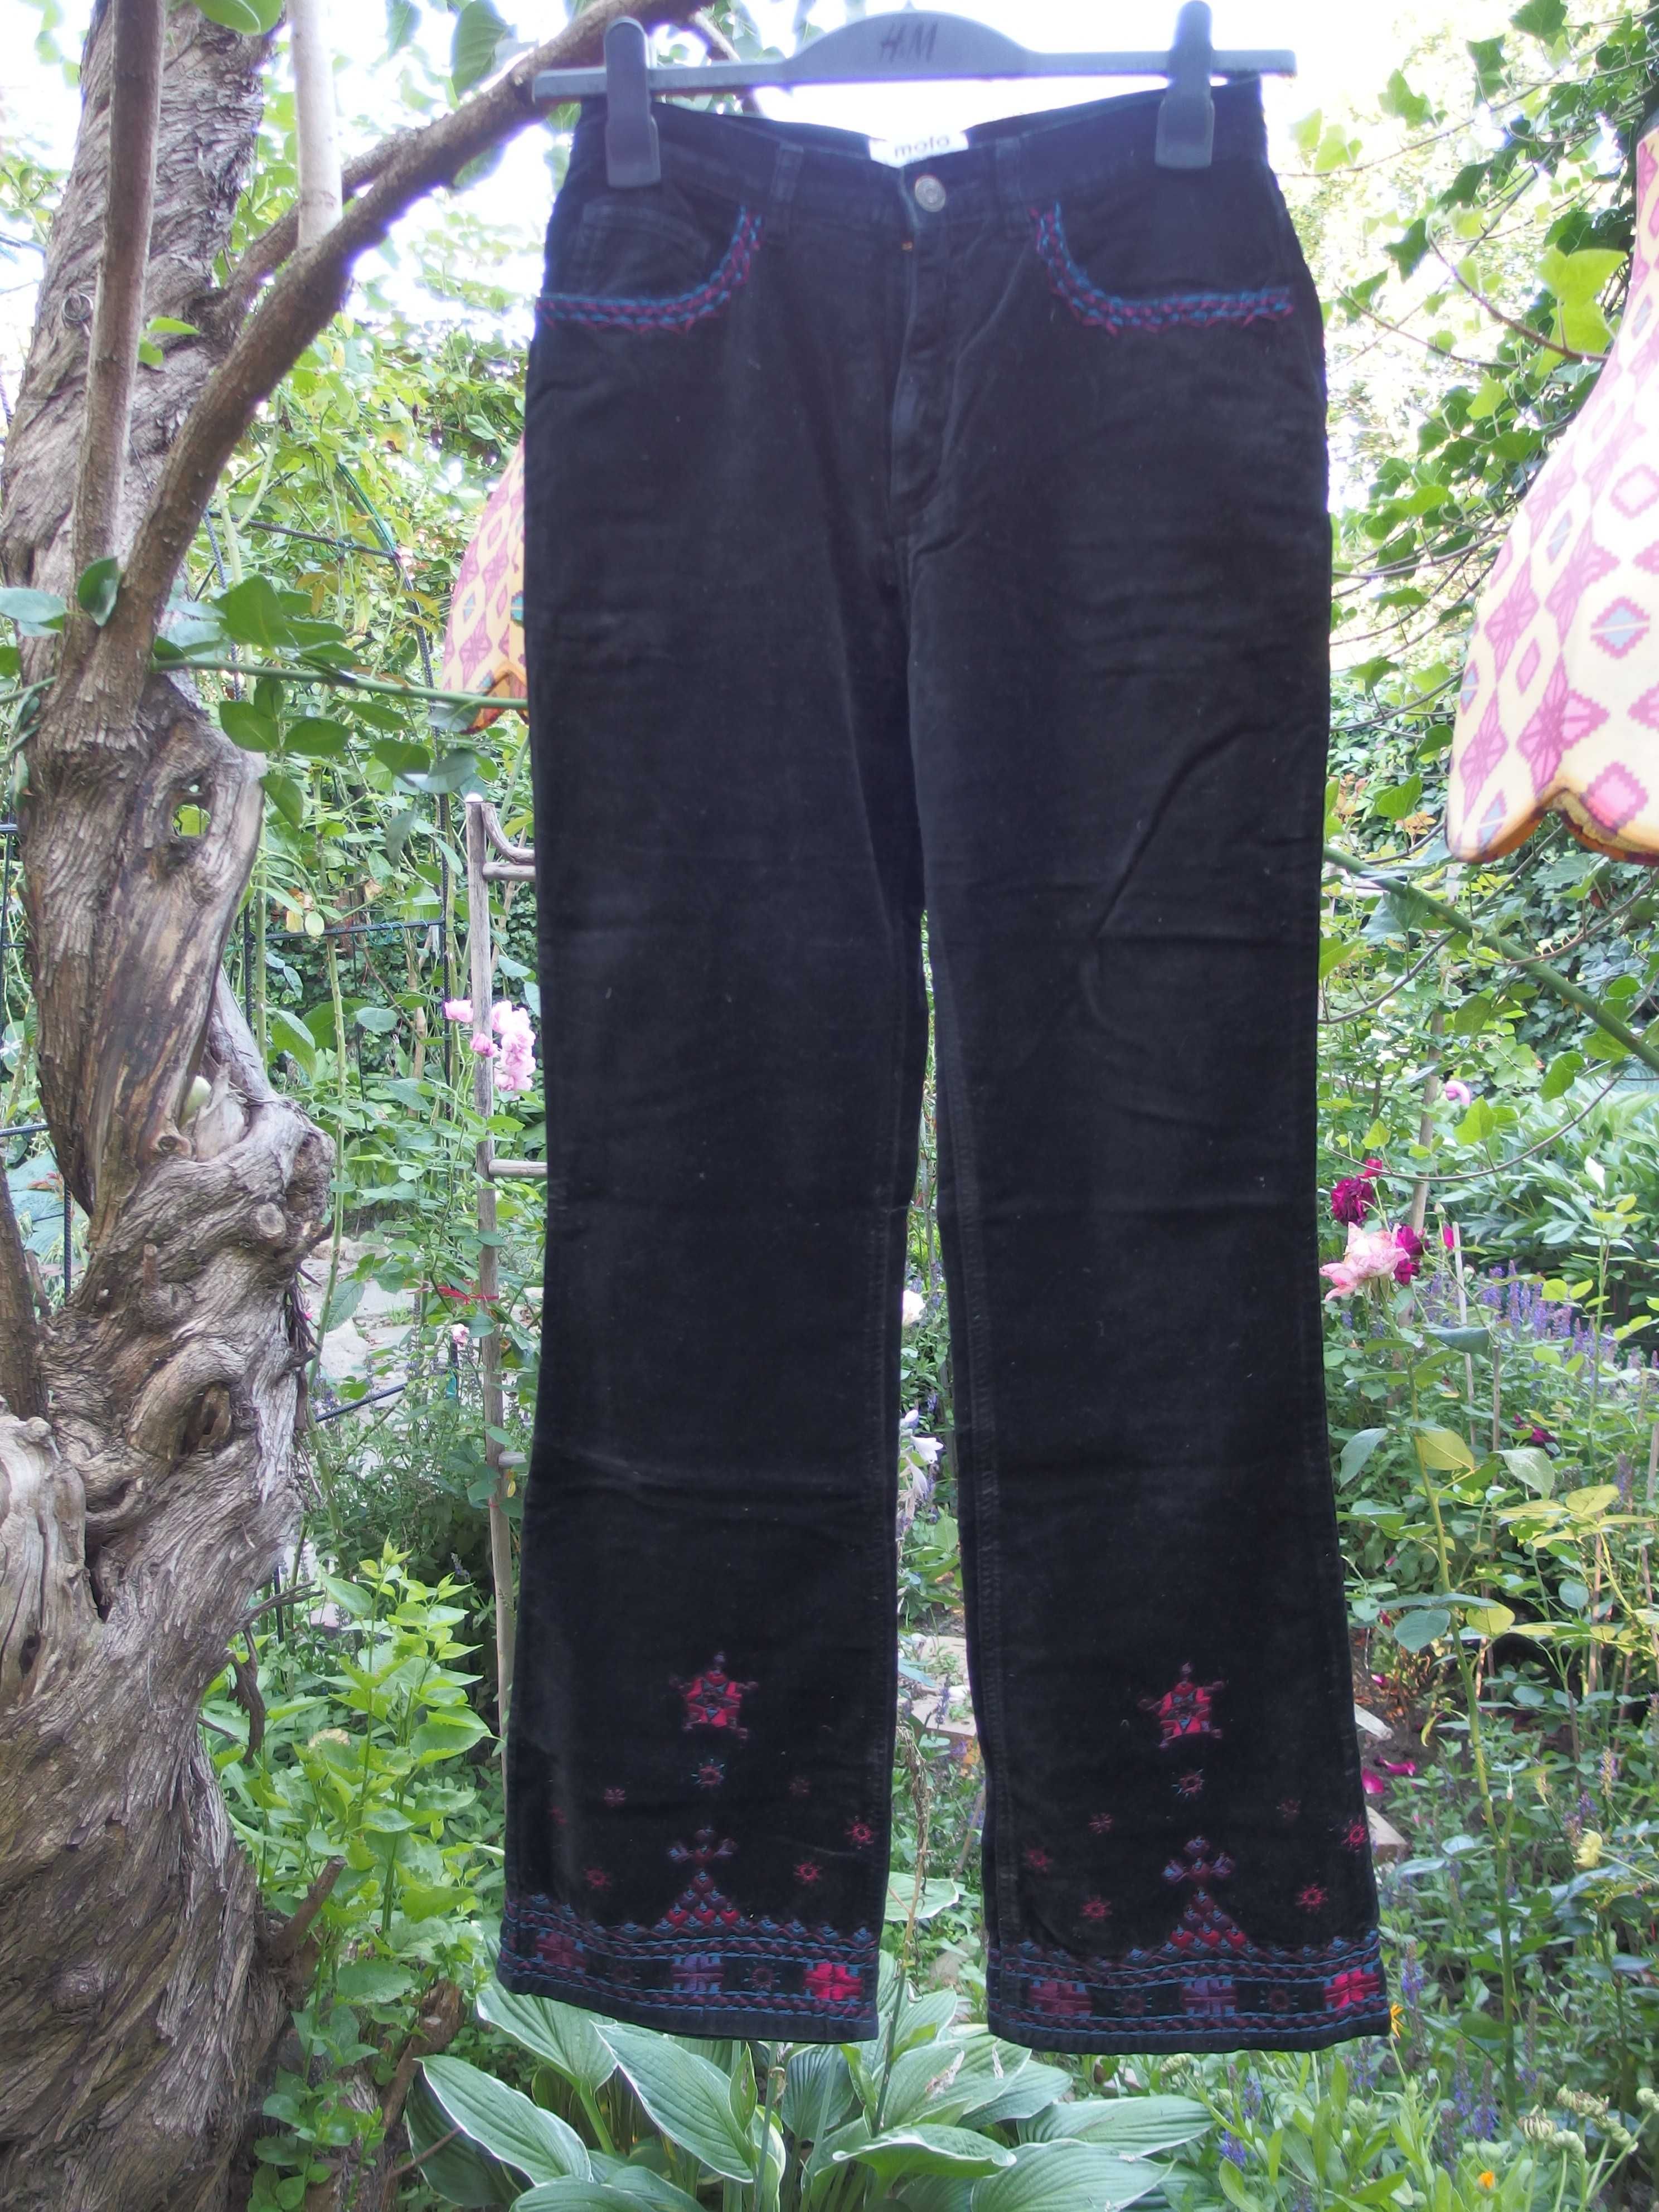 Spodnie welurowe Moto Jeanswear. Made in Hong Kong. Czarne. Haft